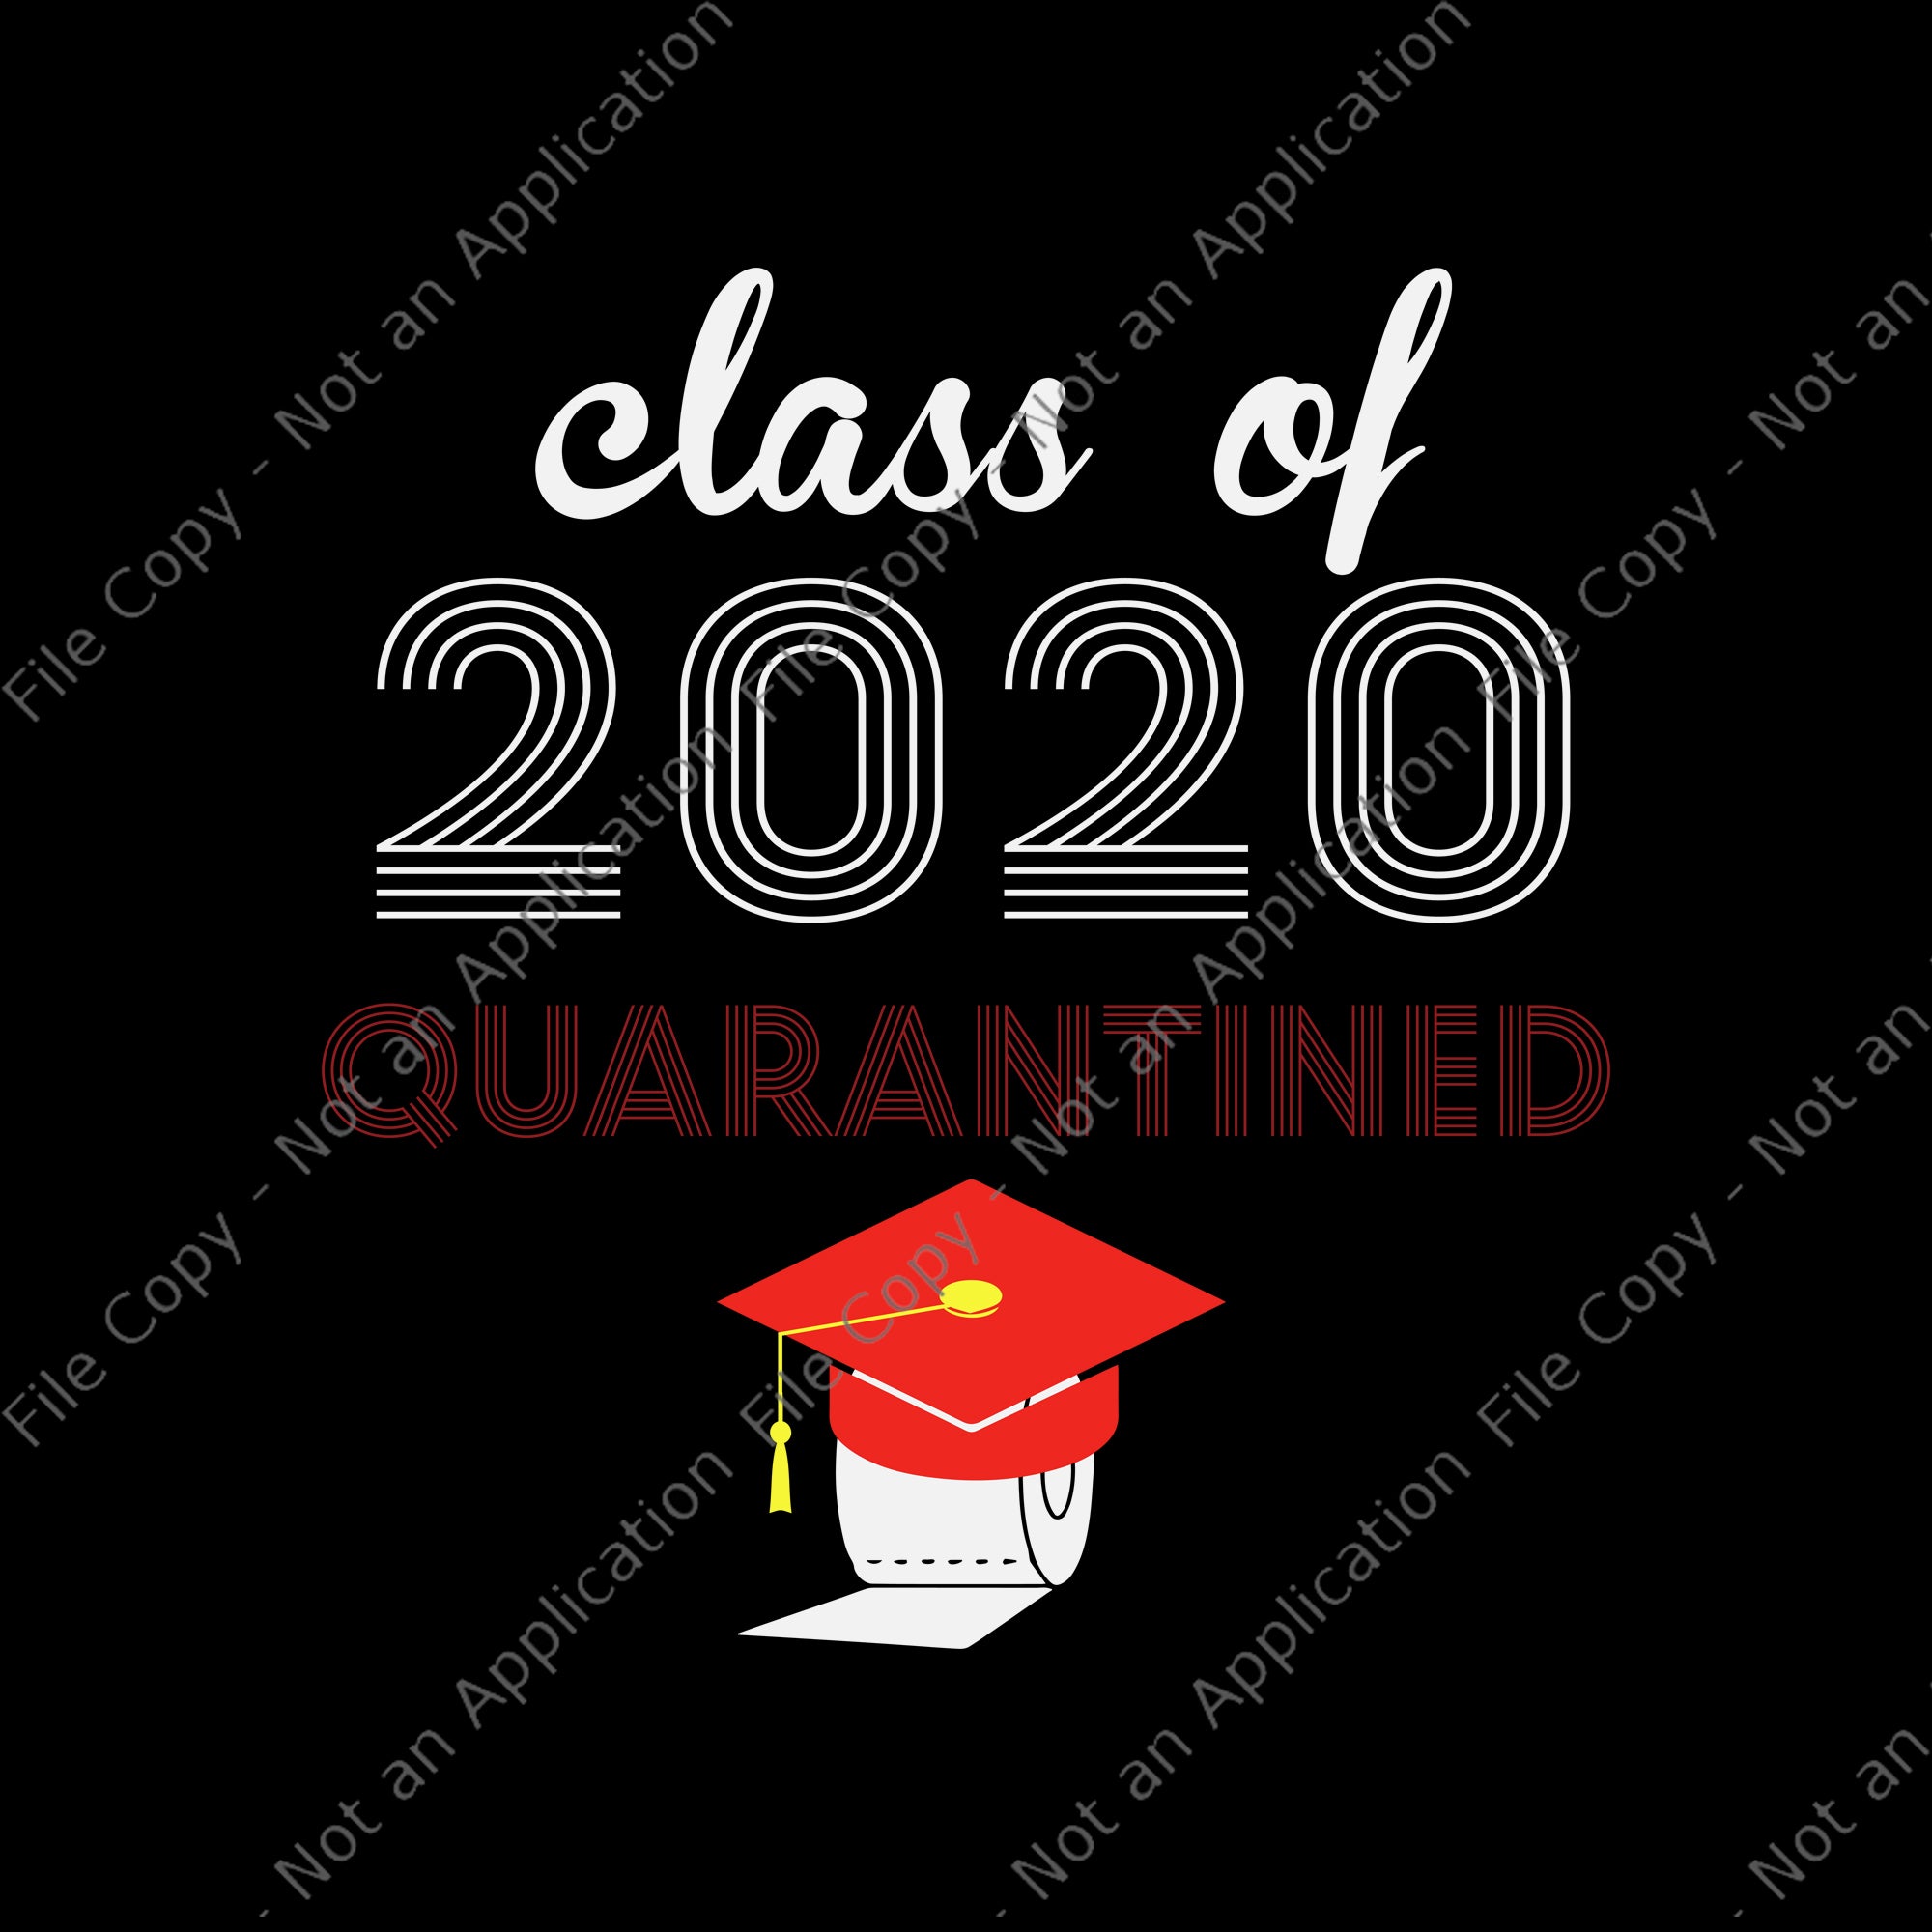 Class of 2020 quarantined svg, class of 2020 quarantined, senior 2020 svg, senior 2020 png, eps, dxf file